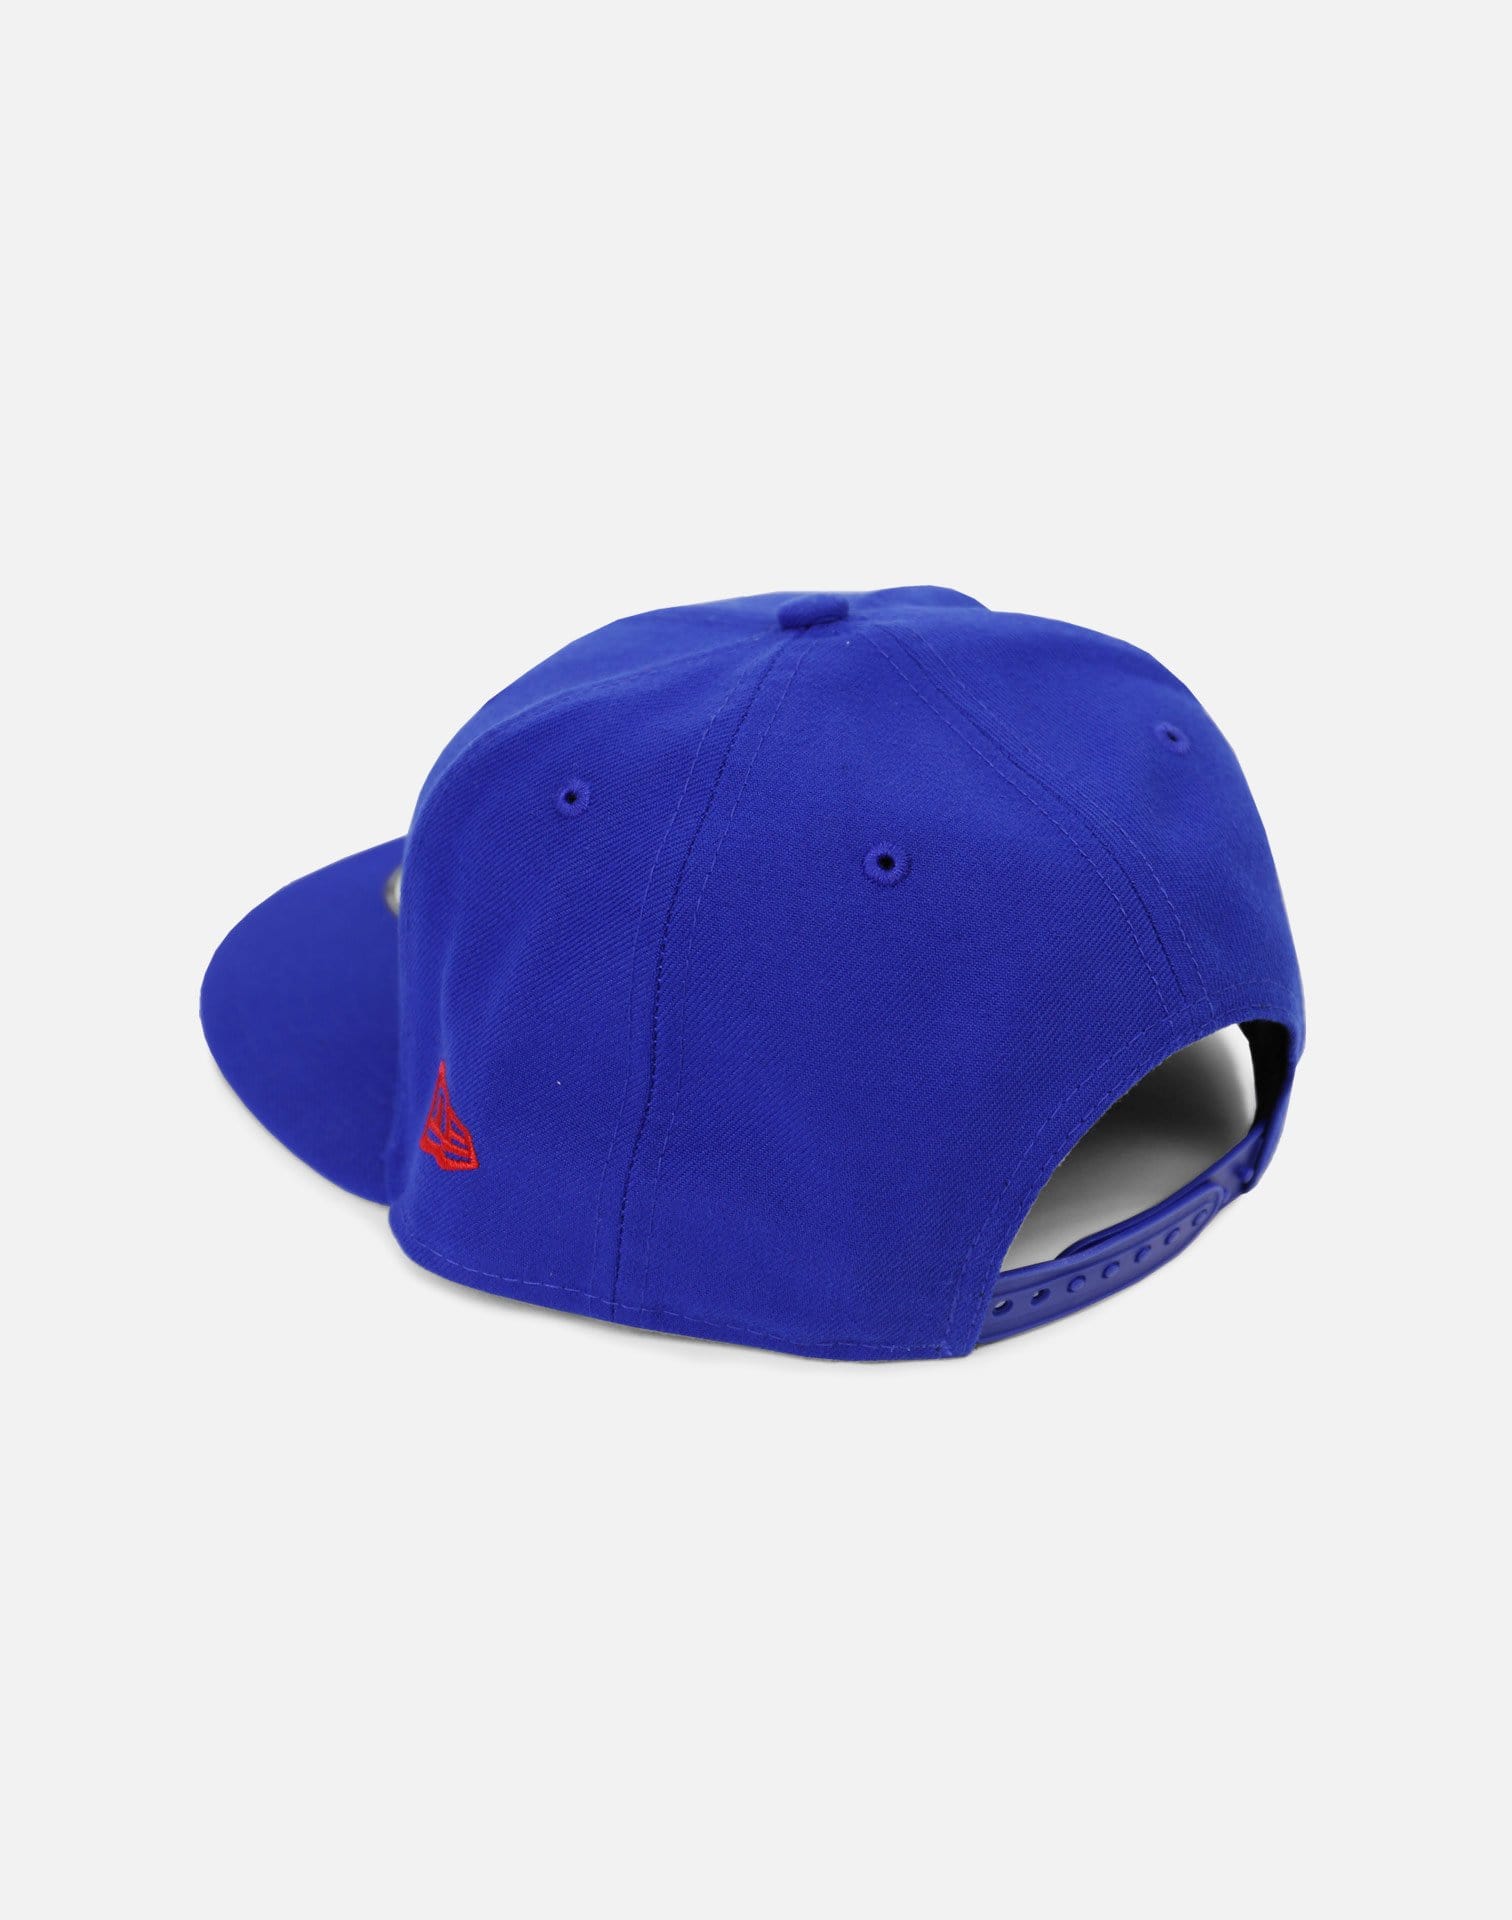 New Era Philadelphia 76ers Golden Hit Snapback Hat (Blue)